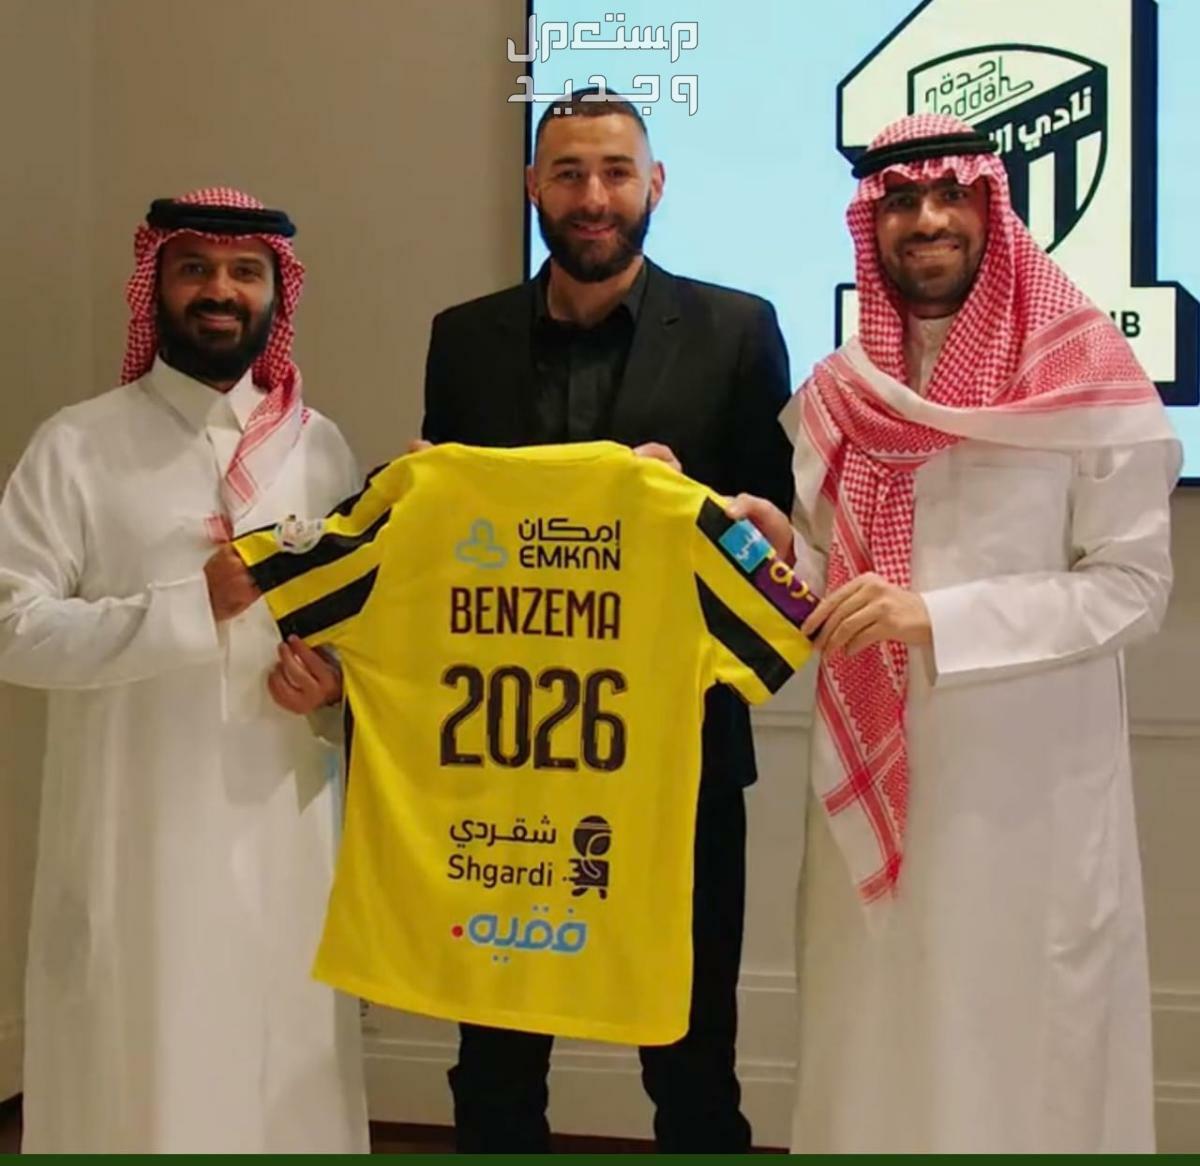 صور كريم بنزيما مع الاتحاد وتوقيعه للعقد حتى 2026 في الإمارات العربية المتحدة